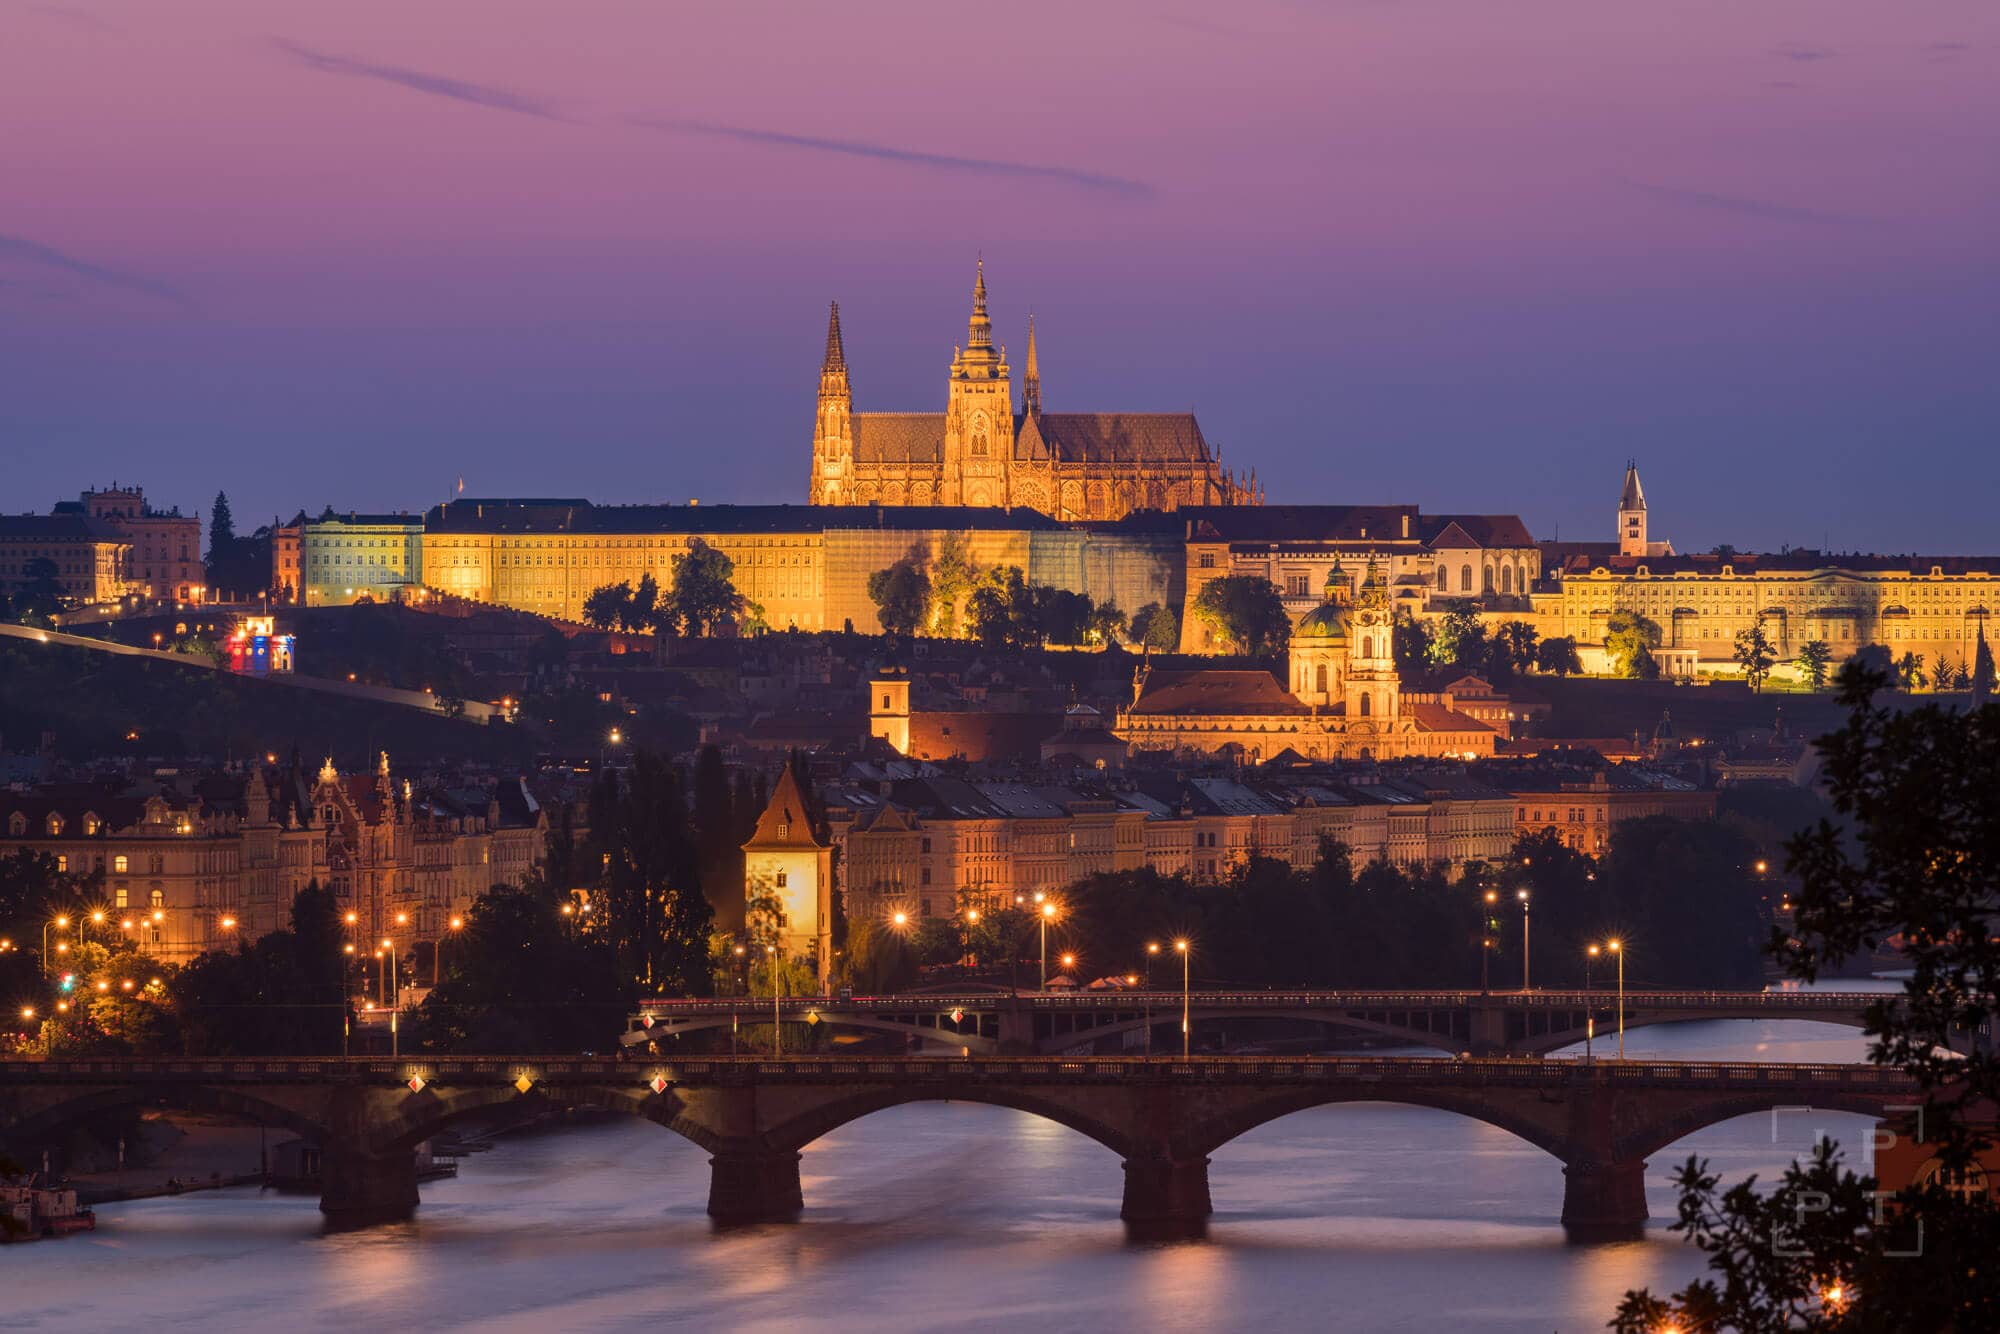 Prague castle is a UNESCO world heritage site